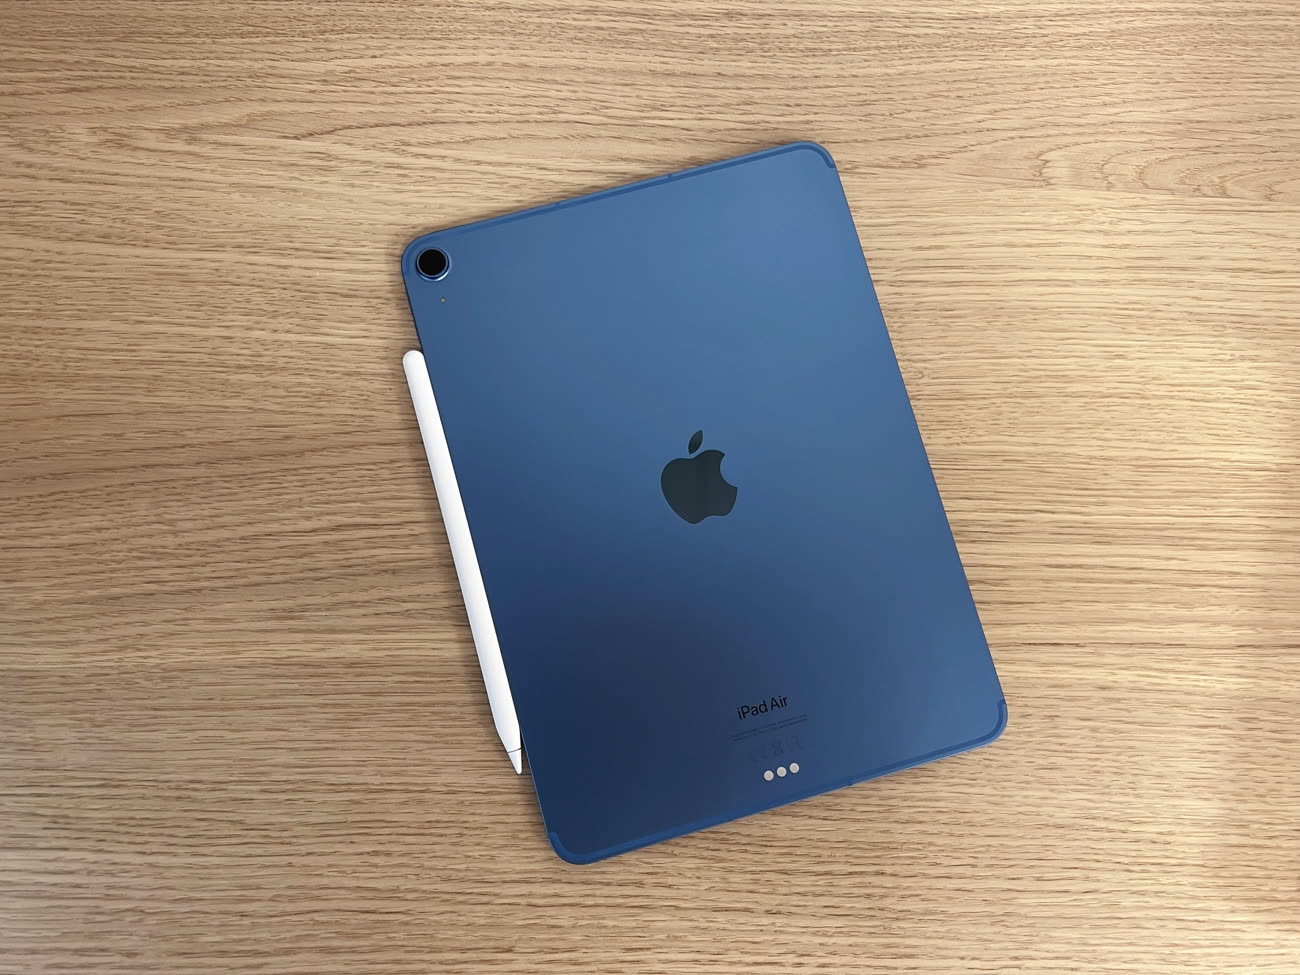 Nouveaux iPad Air et iPad Mini d'Apple, quoi de neuf sous le capot?